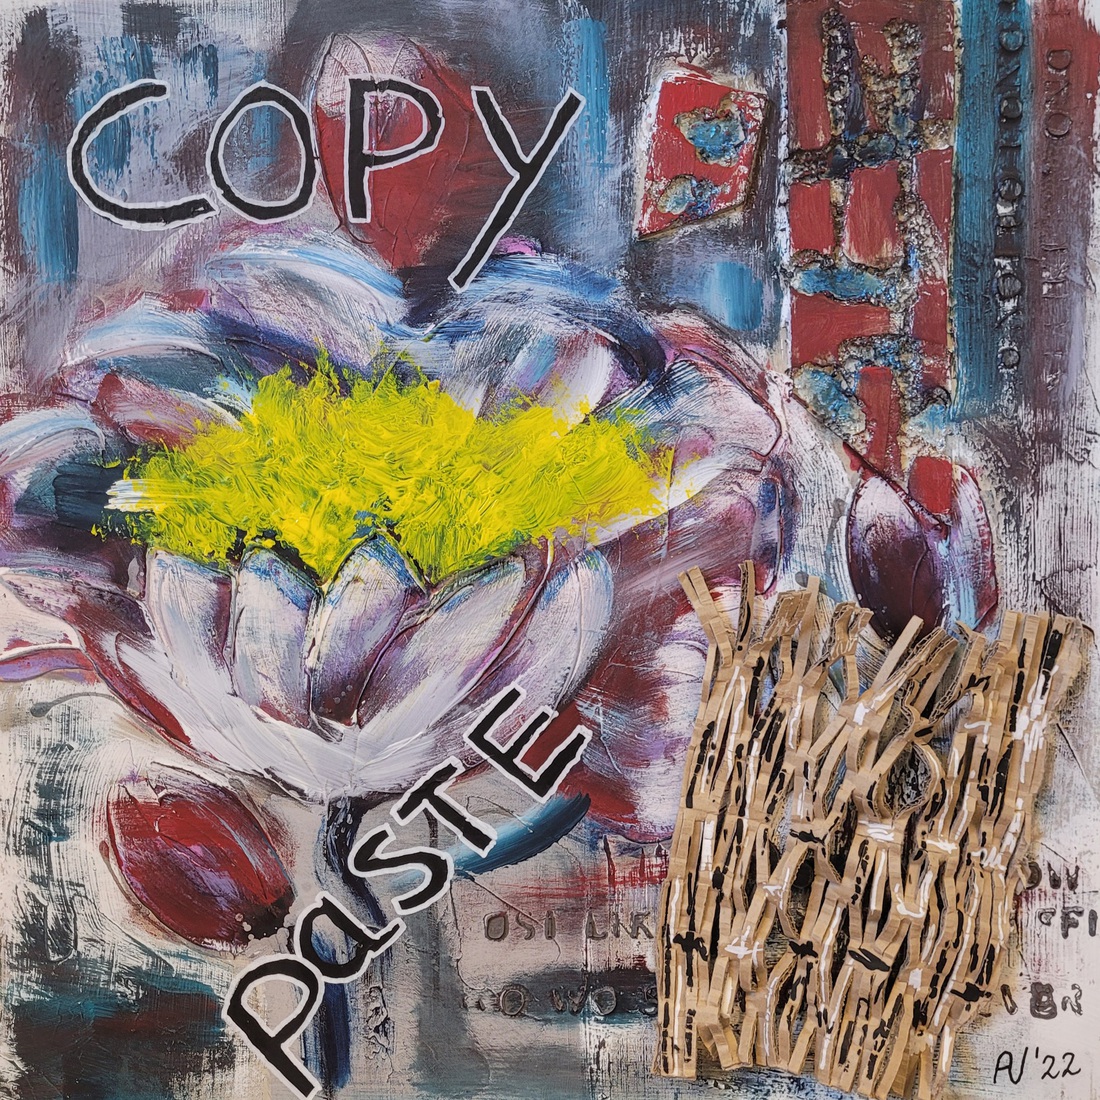 Copy-Paste